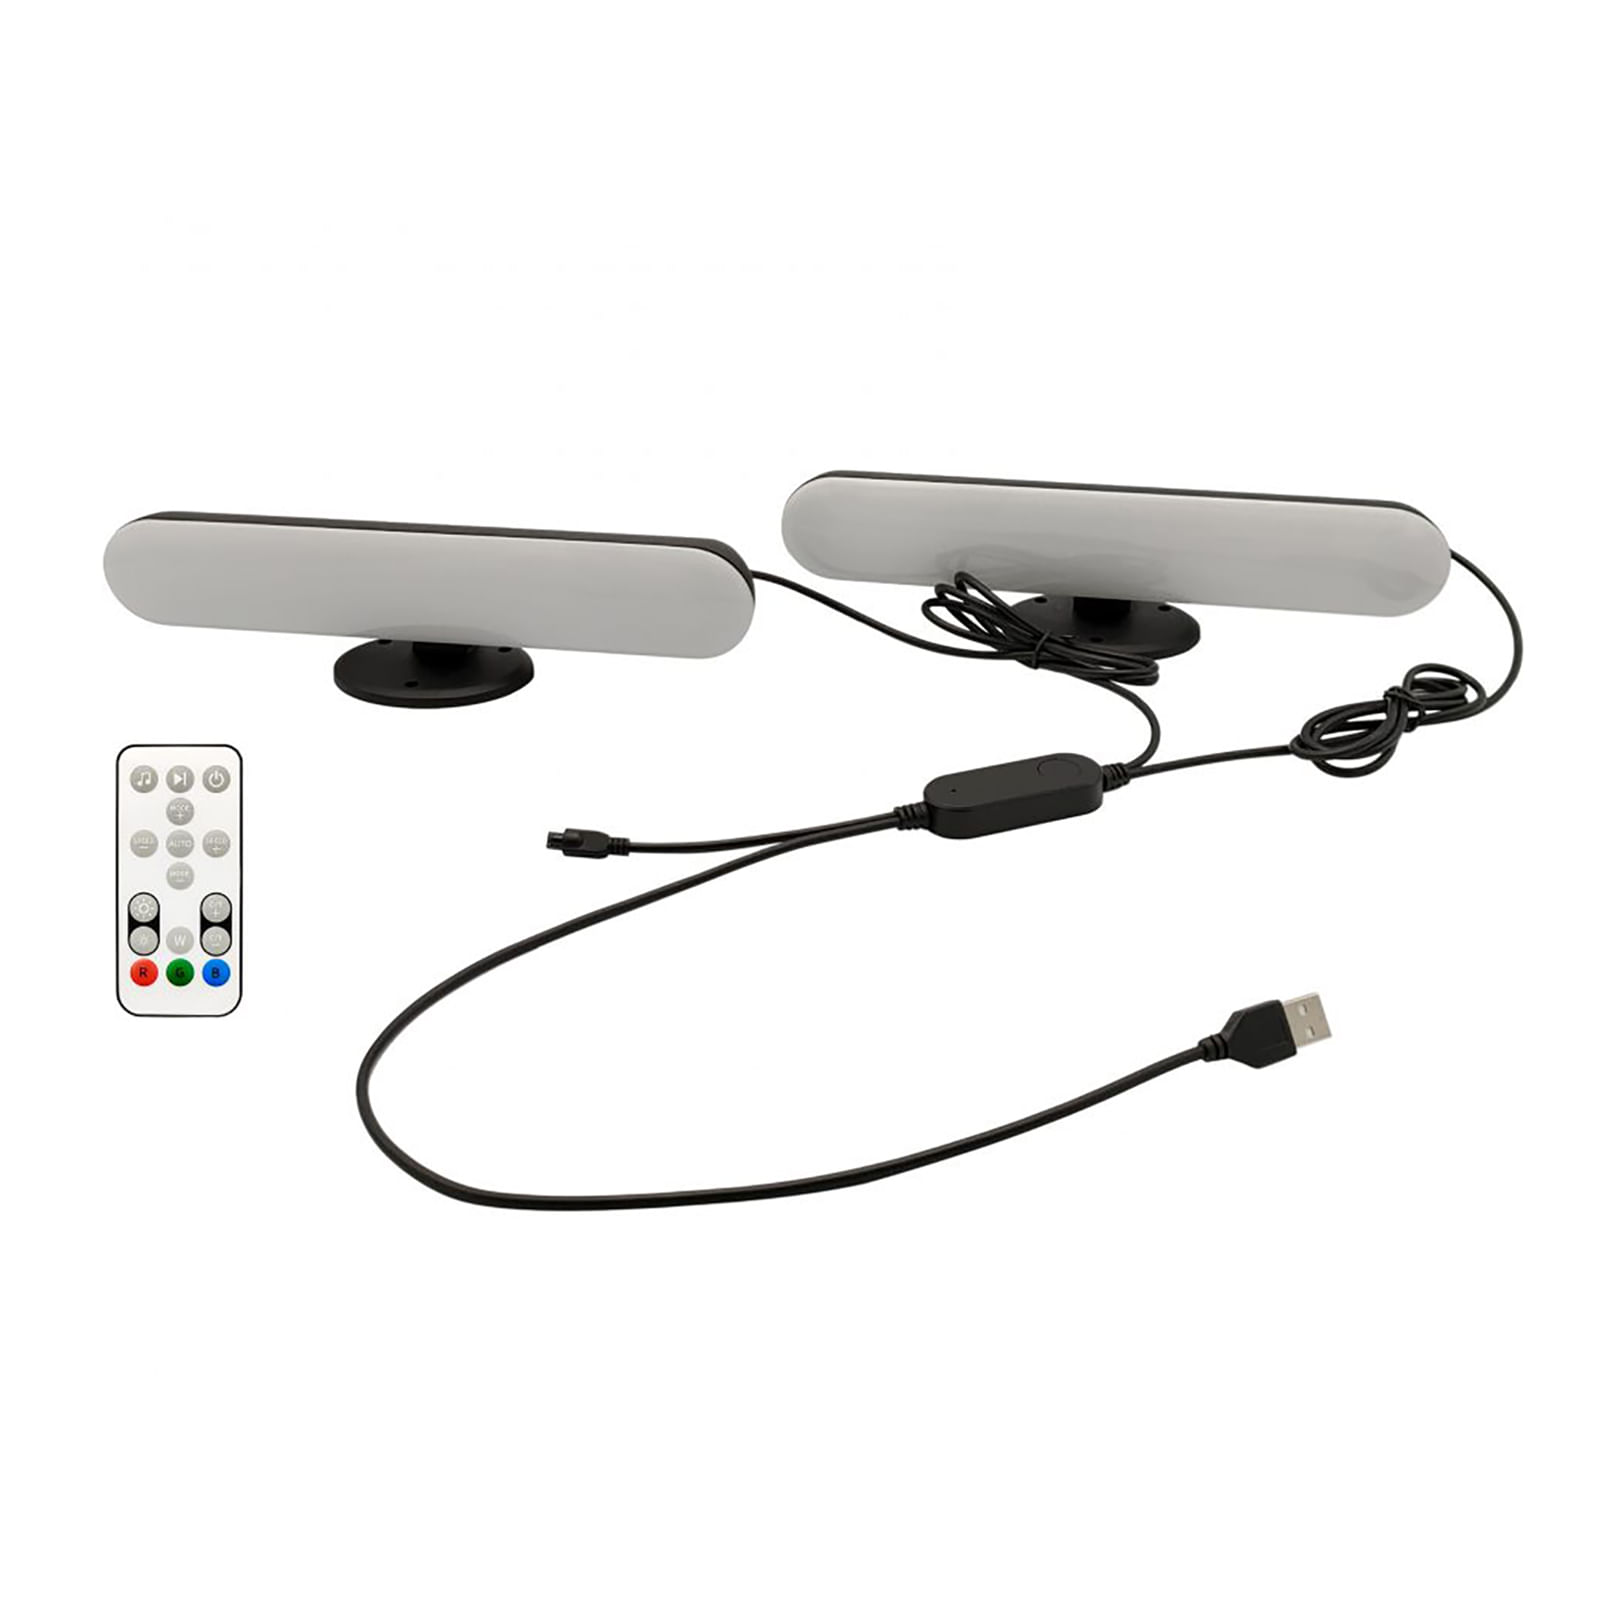 Lampade SMART luce ambiente TV tavolo WiFi USB RGB RGBIC effetto sound  controllo multicolore dimmerabile controllo Alexa Google APP voce